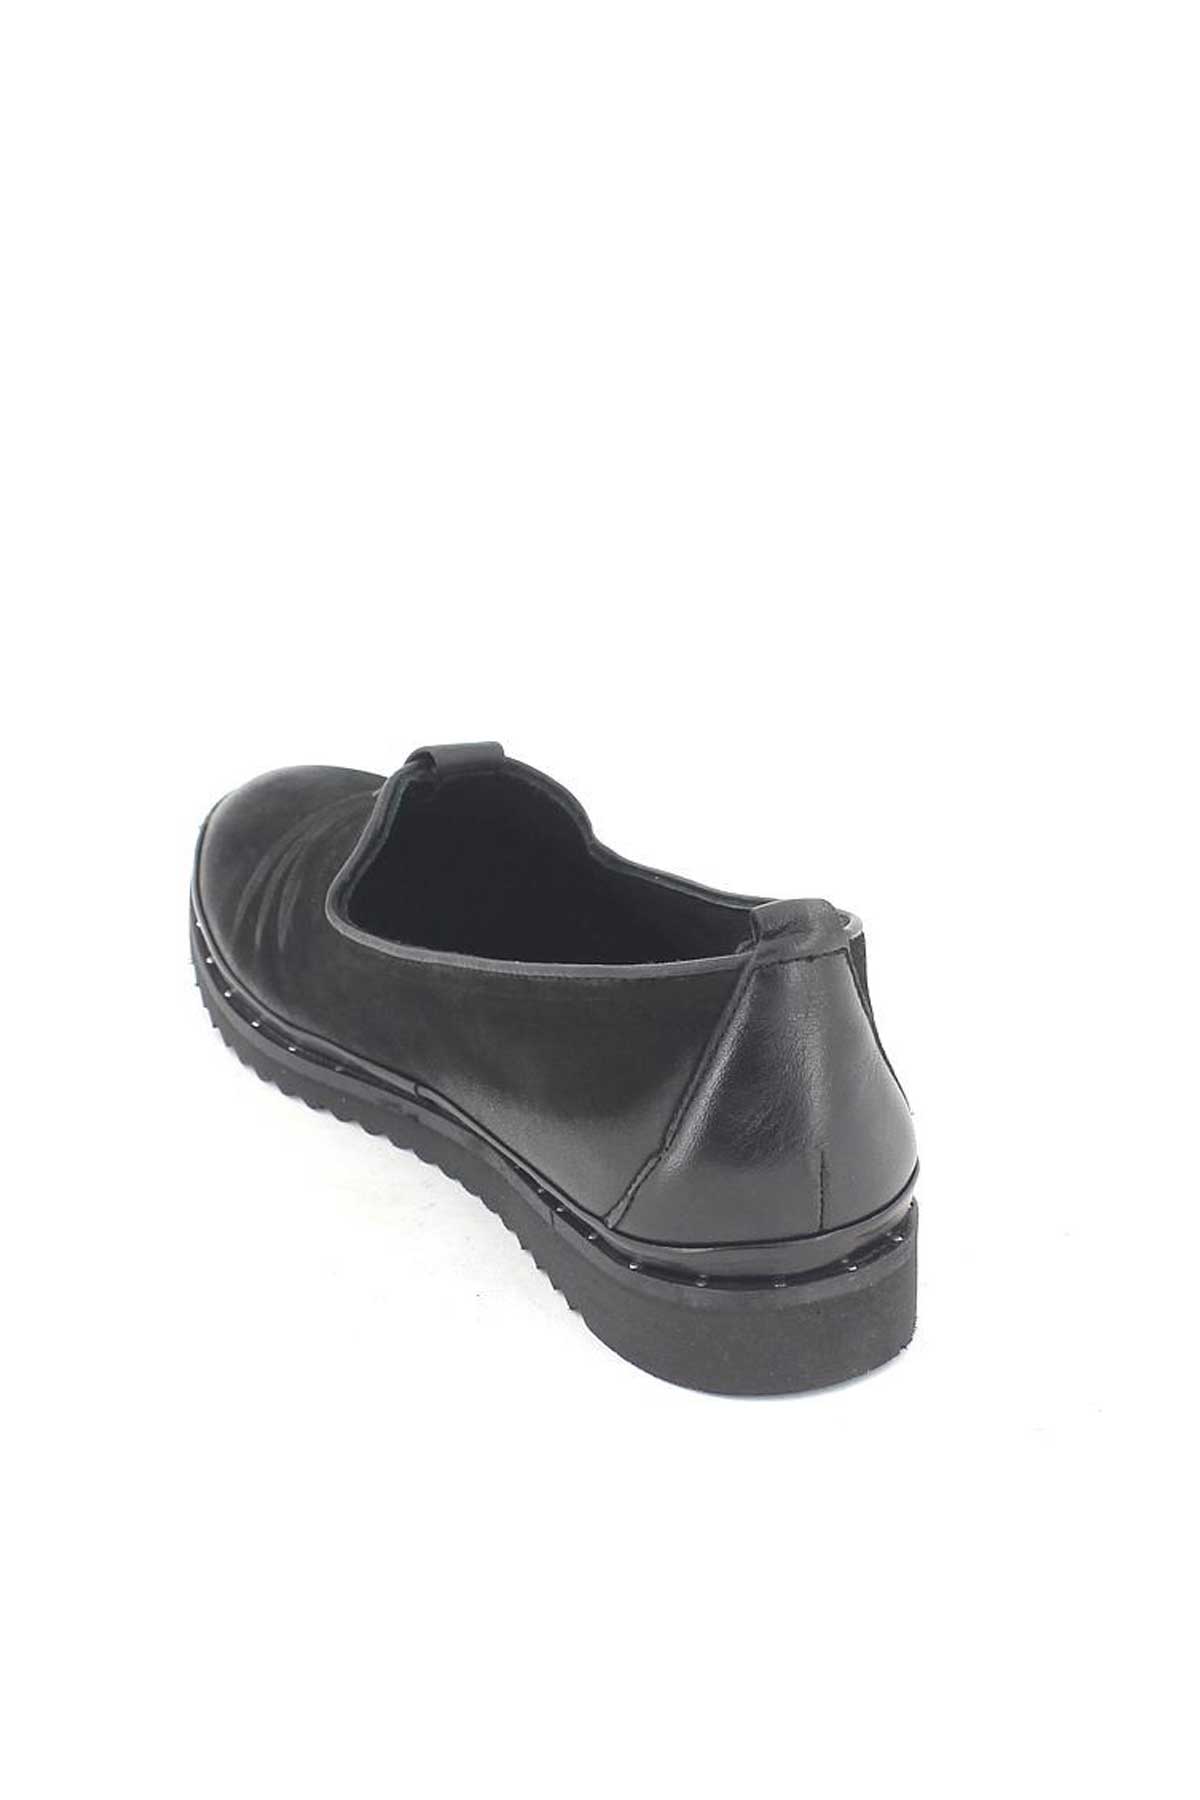 Kadın Deri Comfort Ayakkabı Siyah 1810021K